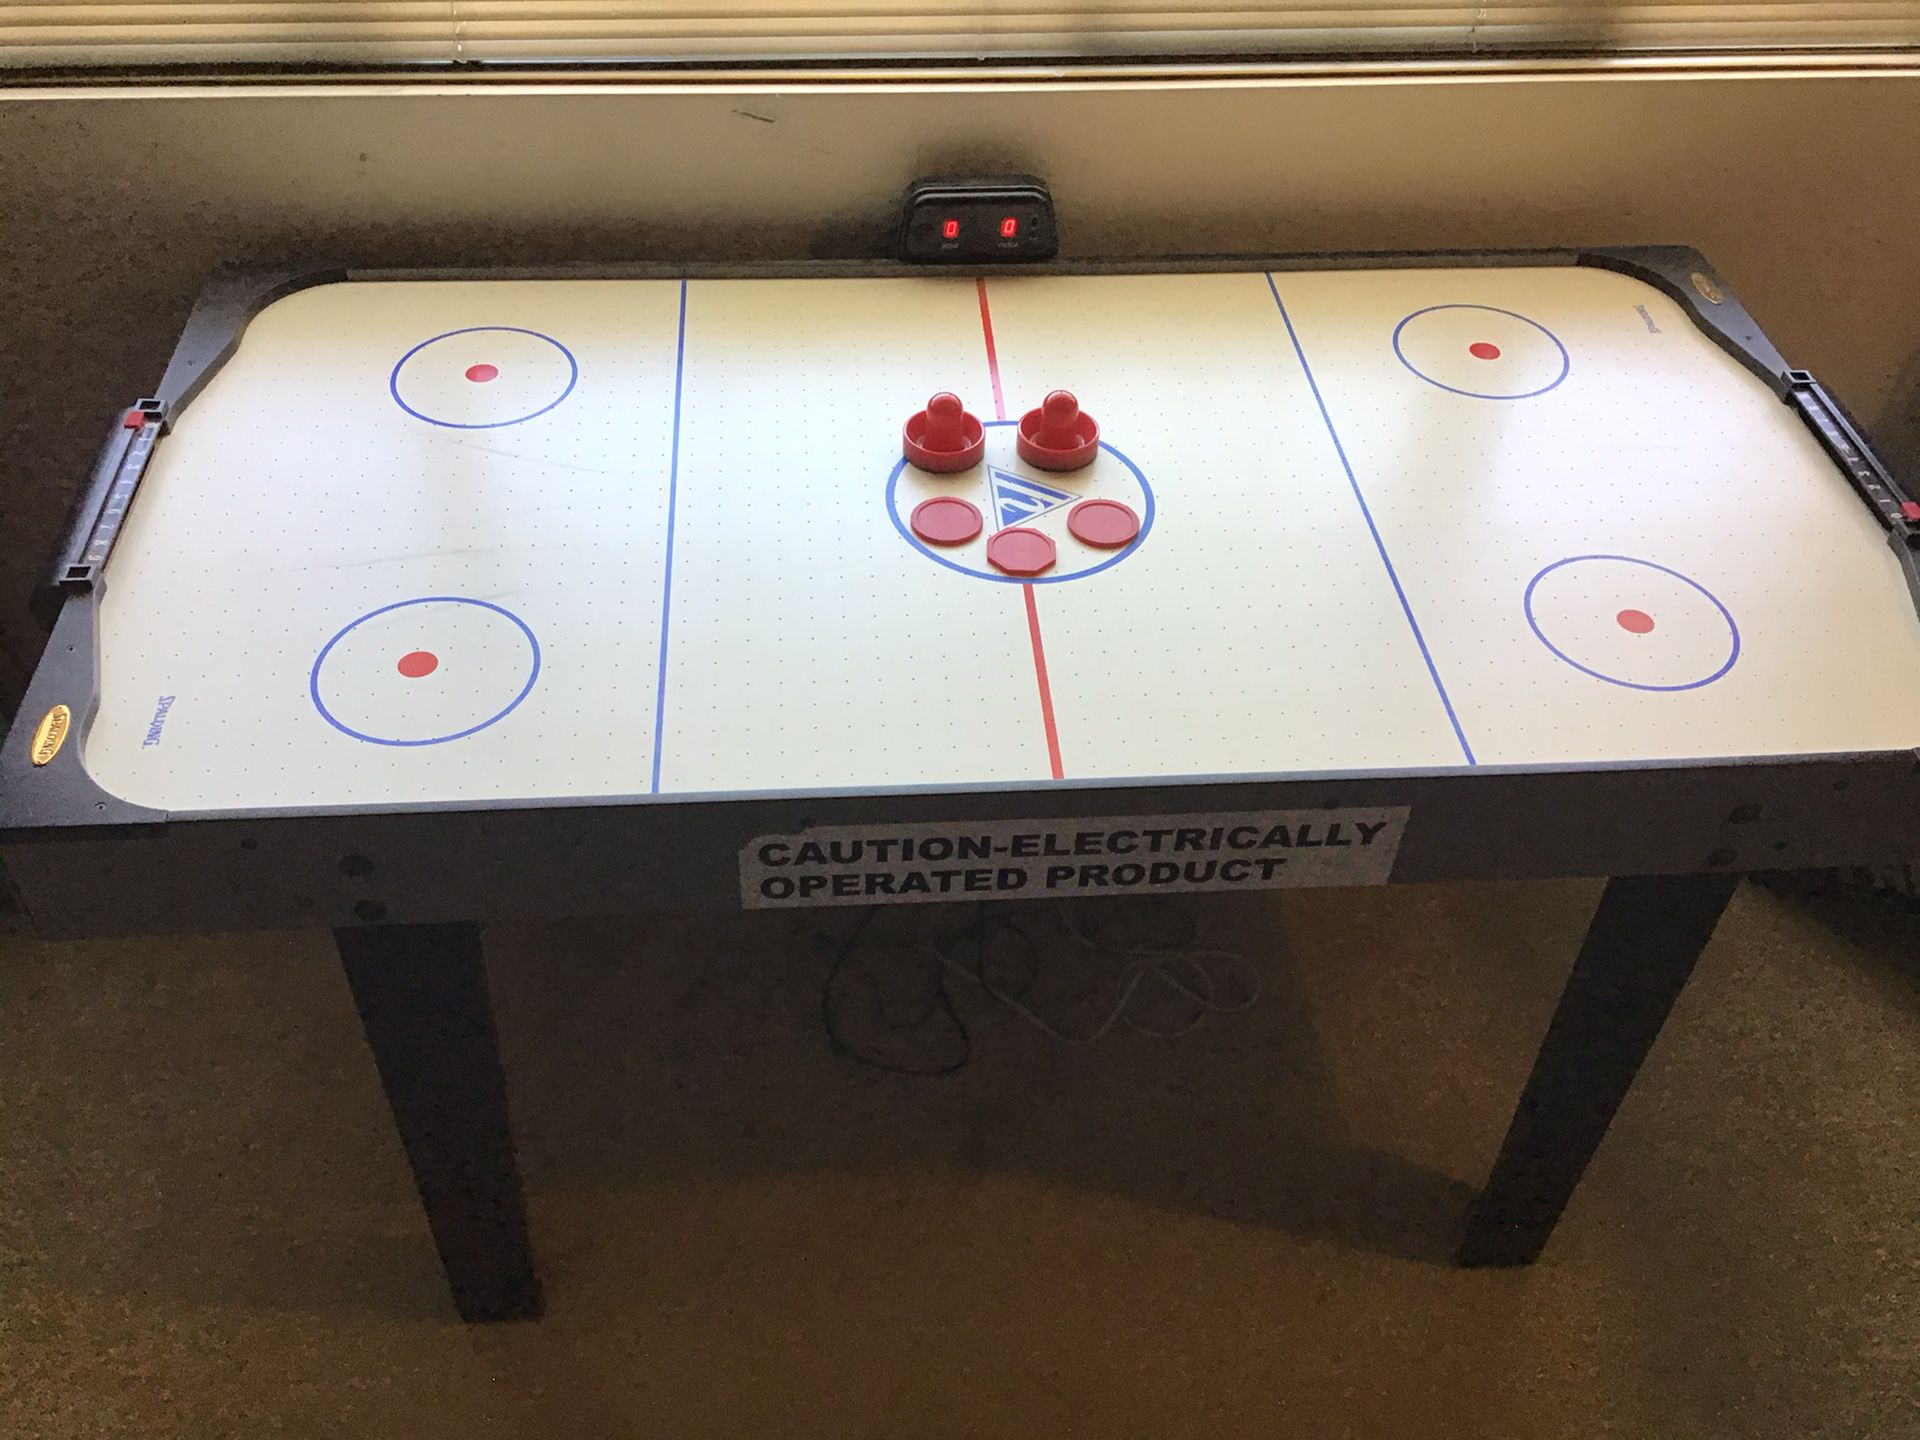 Spaulding Air Hockey Table